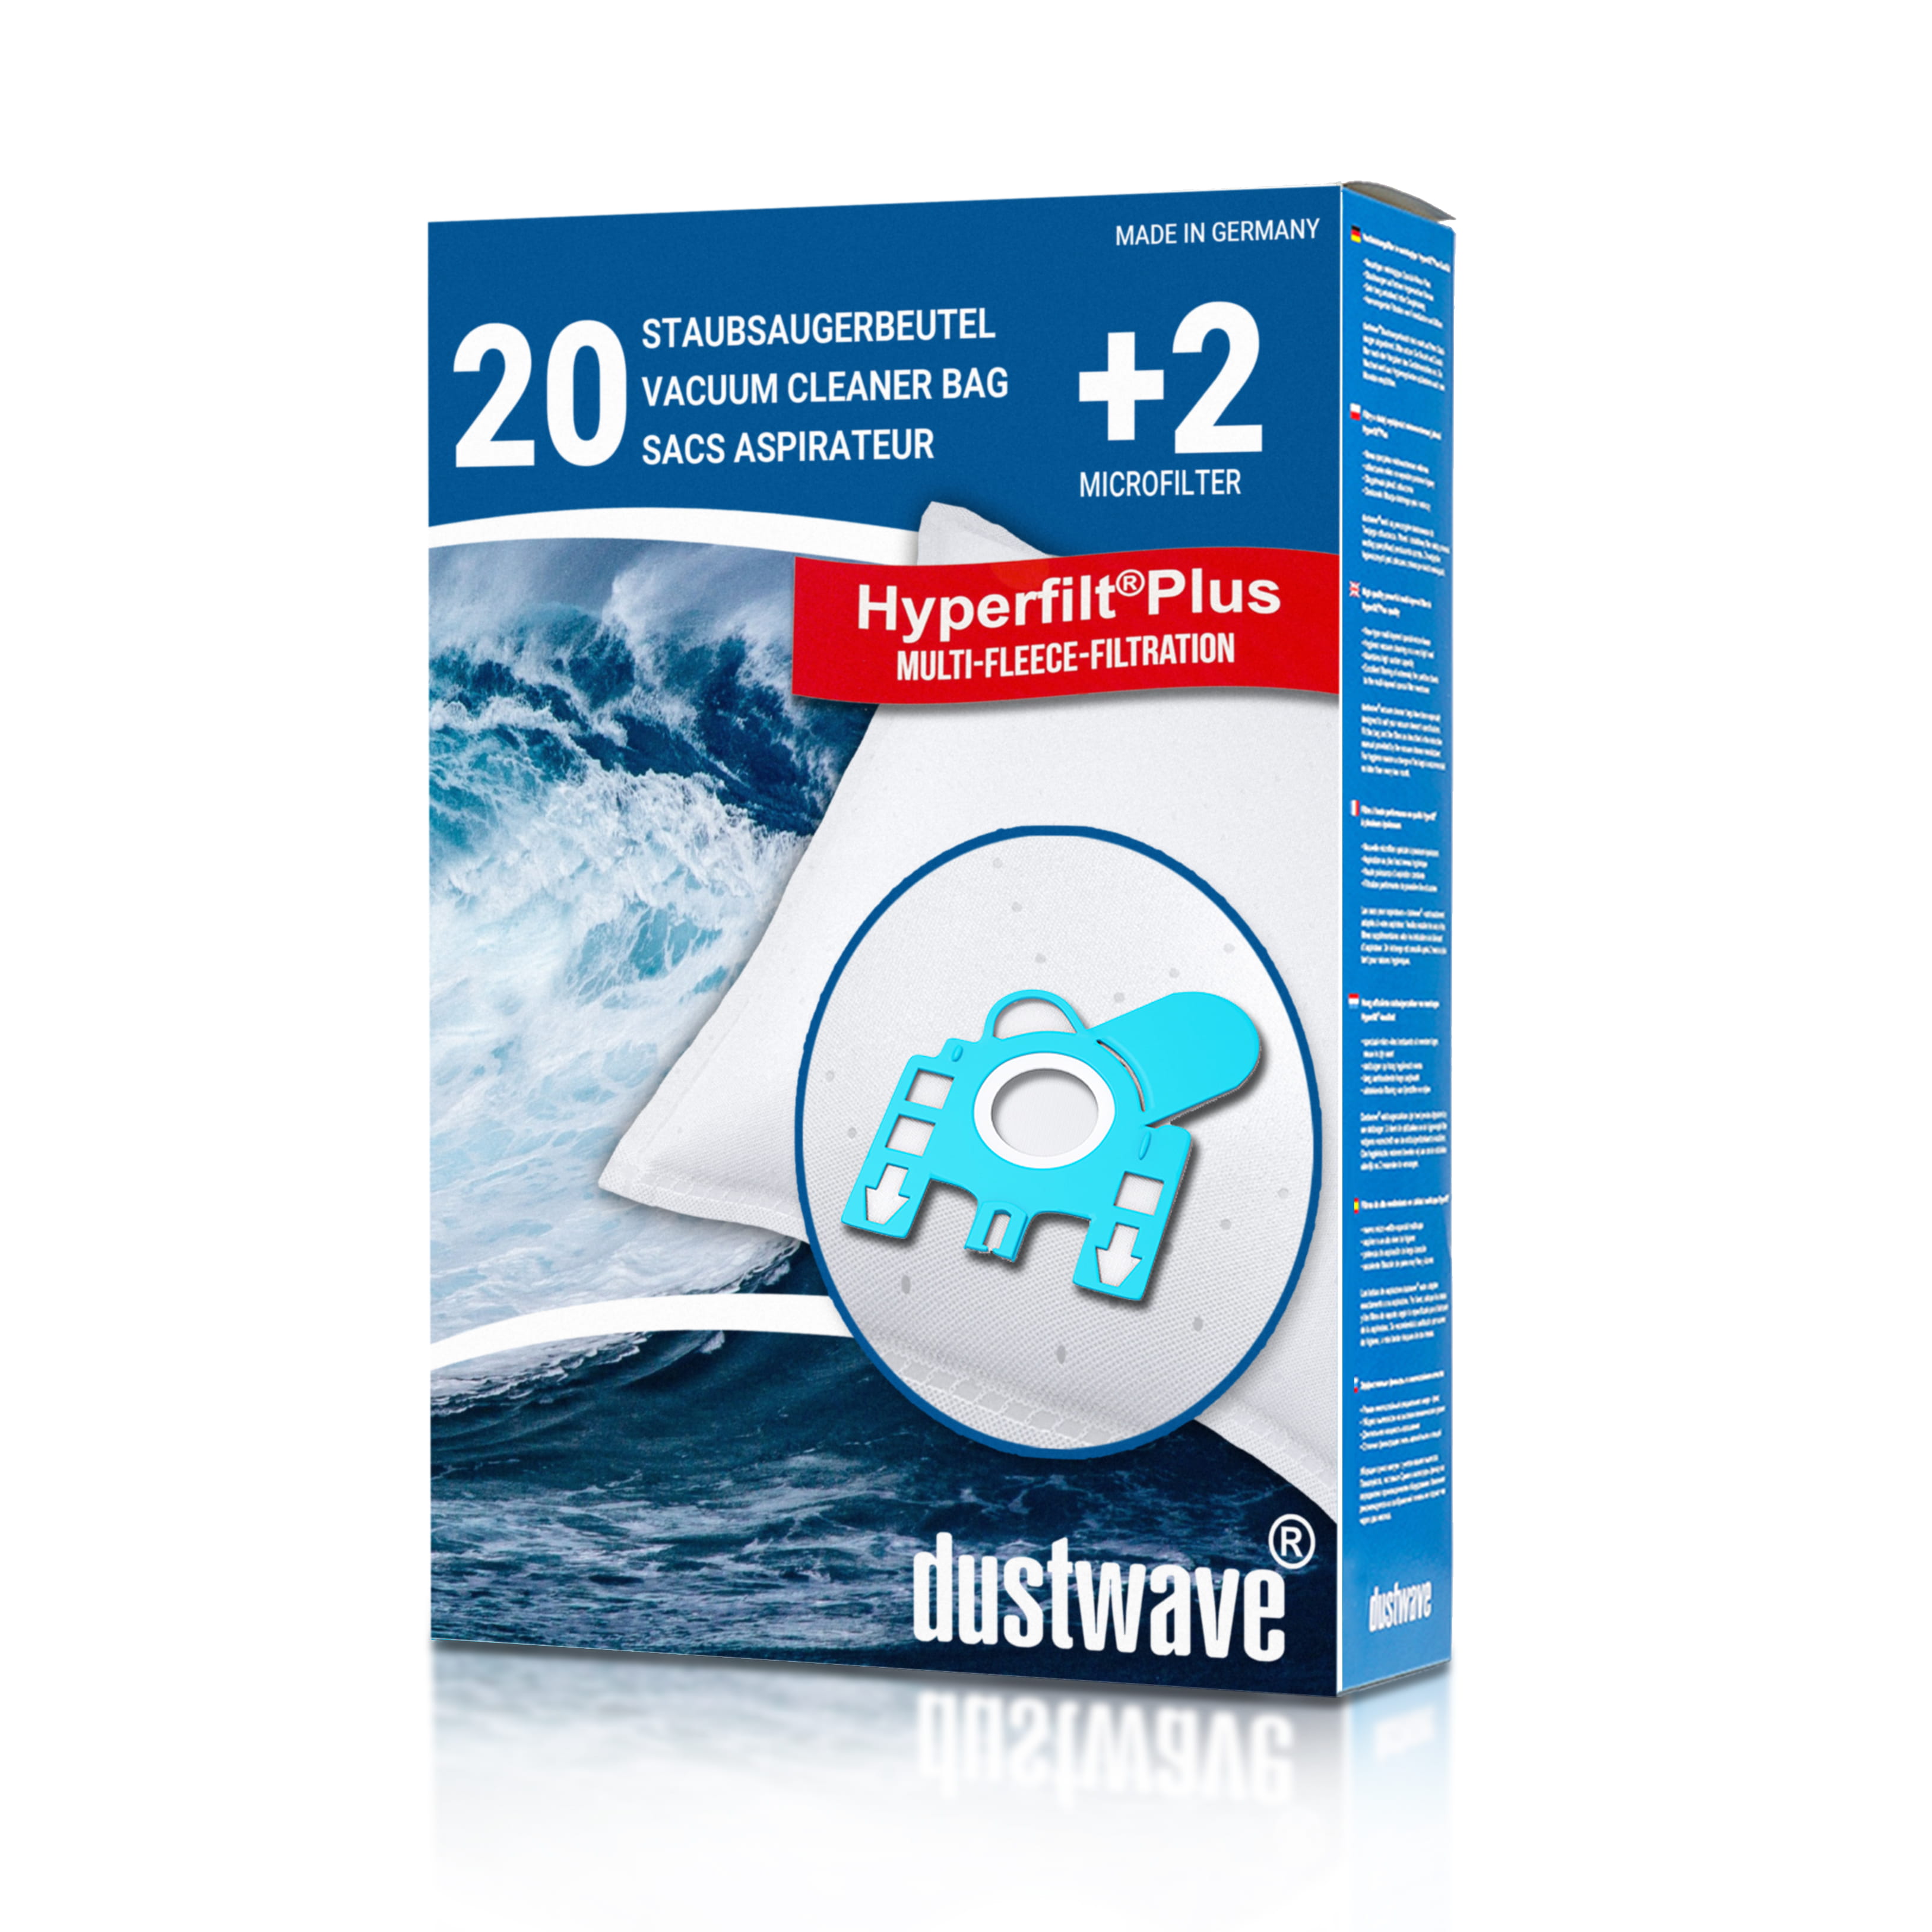 Dustwave® 20 Staubsaugerbeutel für AmazonBasics M21 - hocheffizient mit Hygieneverschluss - Made in Germany